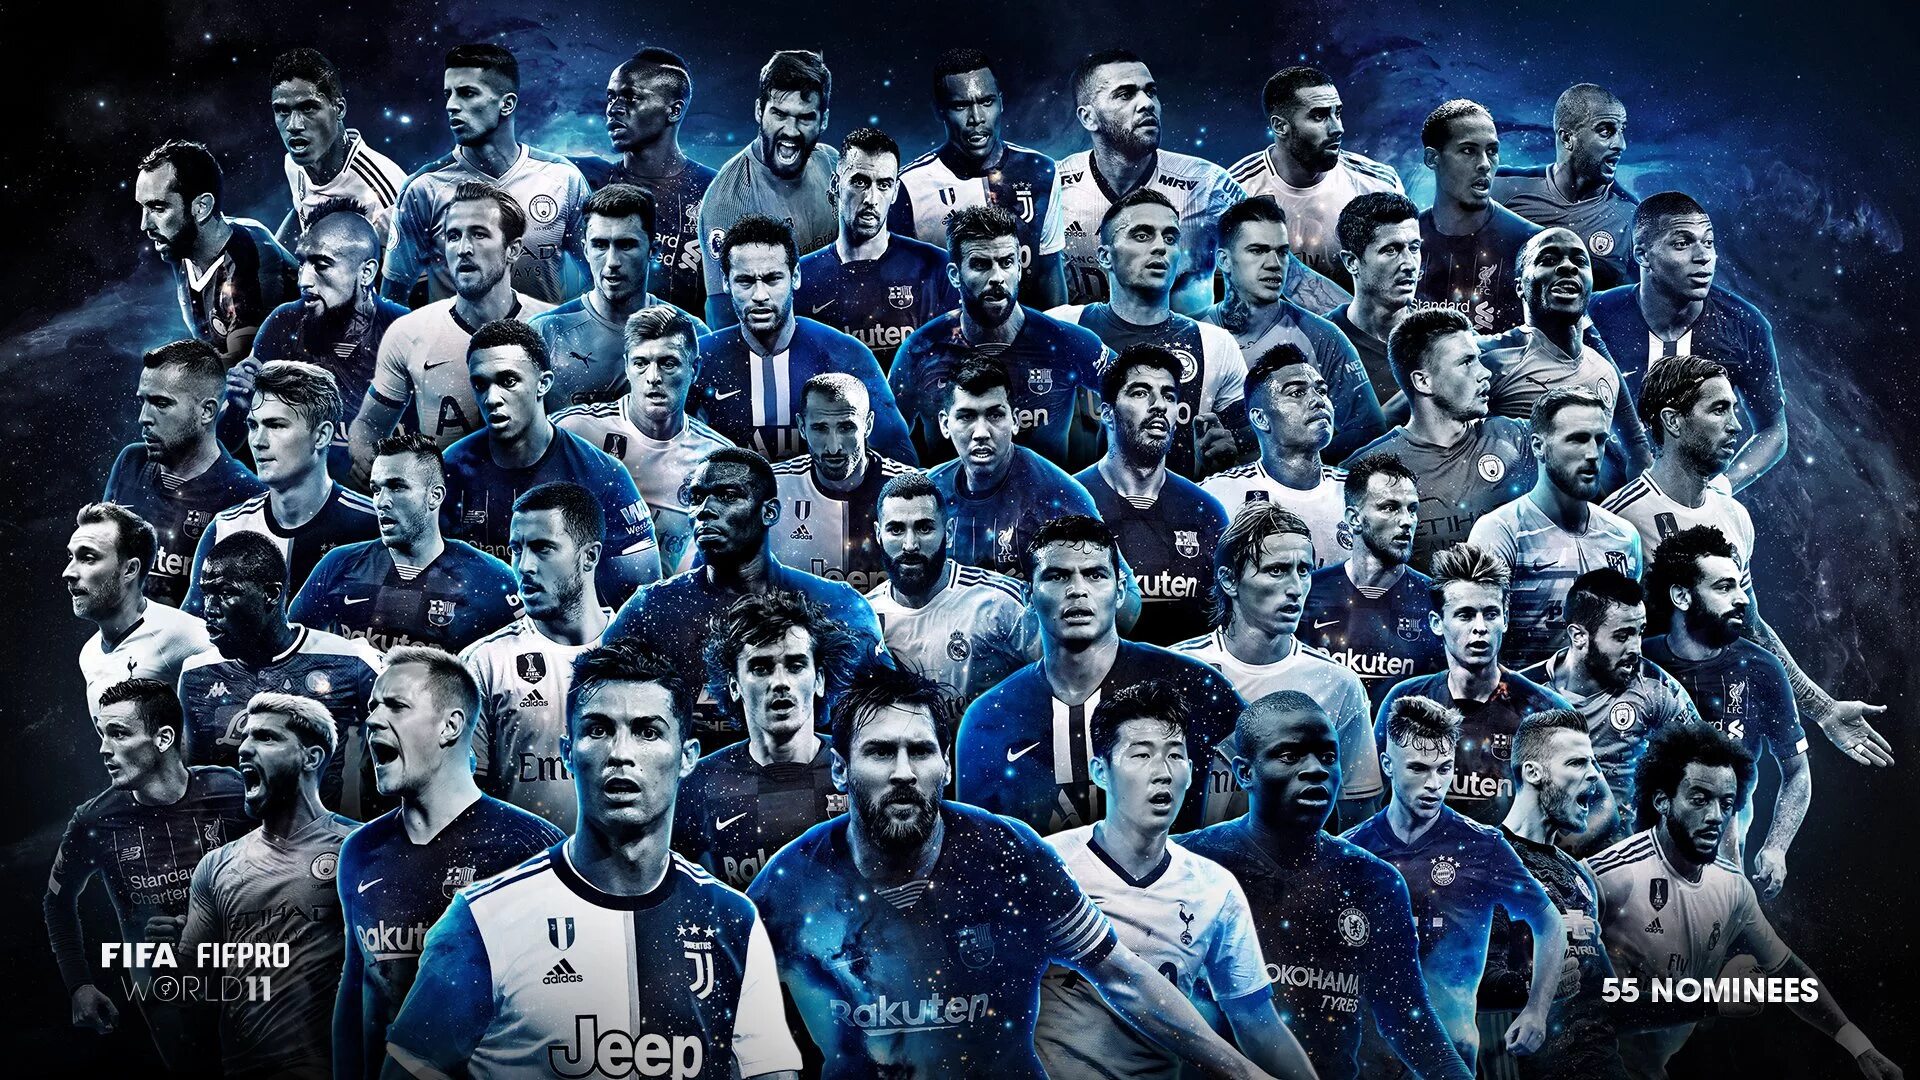 FIFA FIFPRO World XI. Популярные футболисты. Звезды футбола. Футбольные игроки.